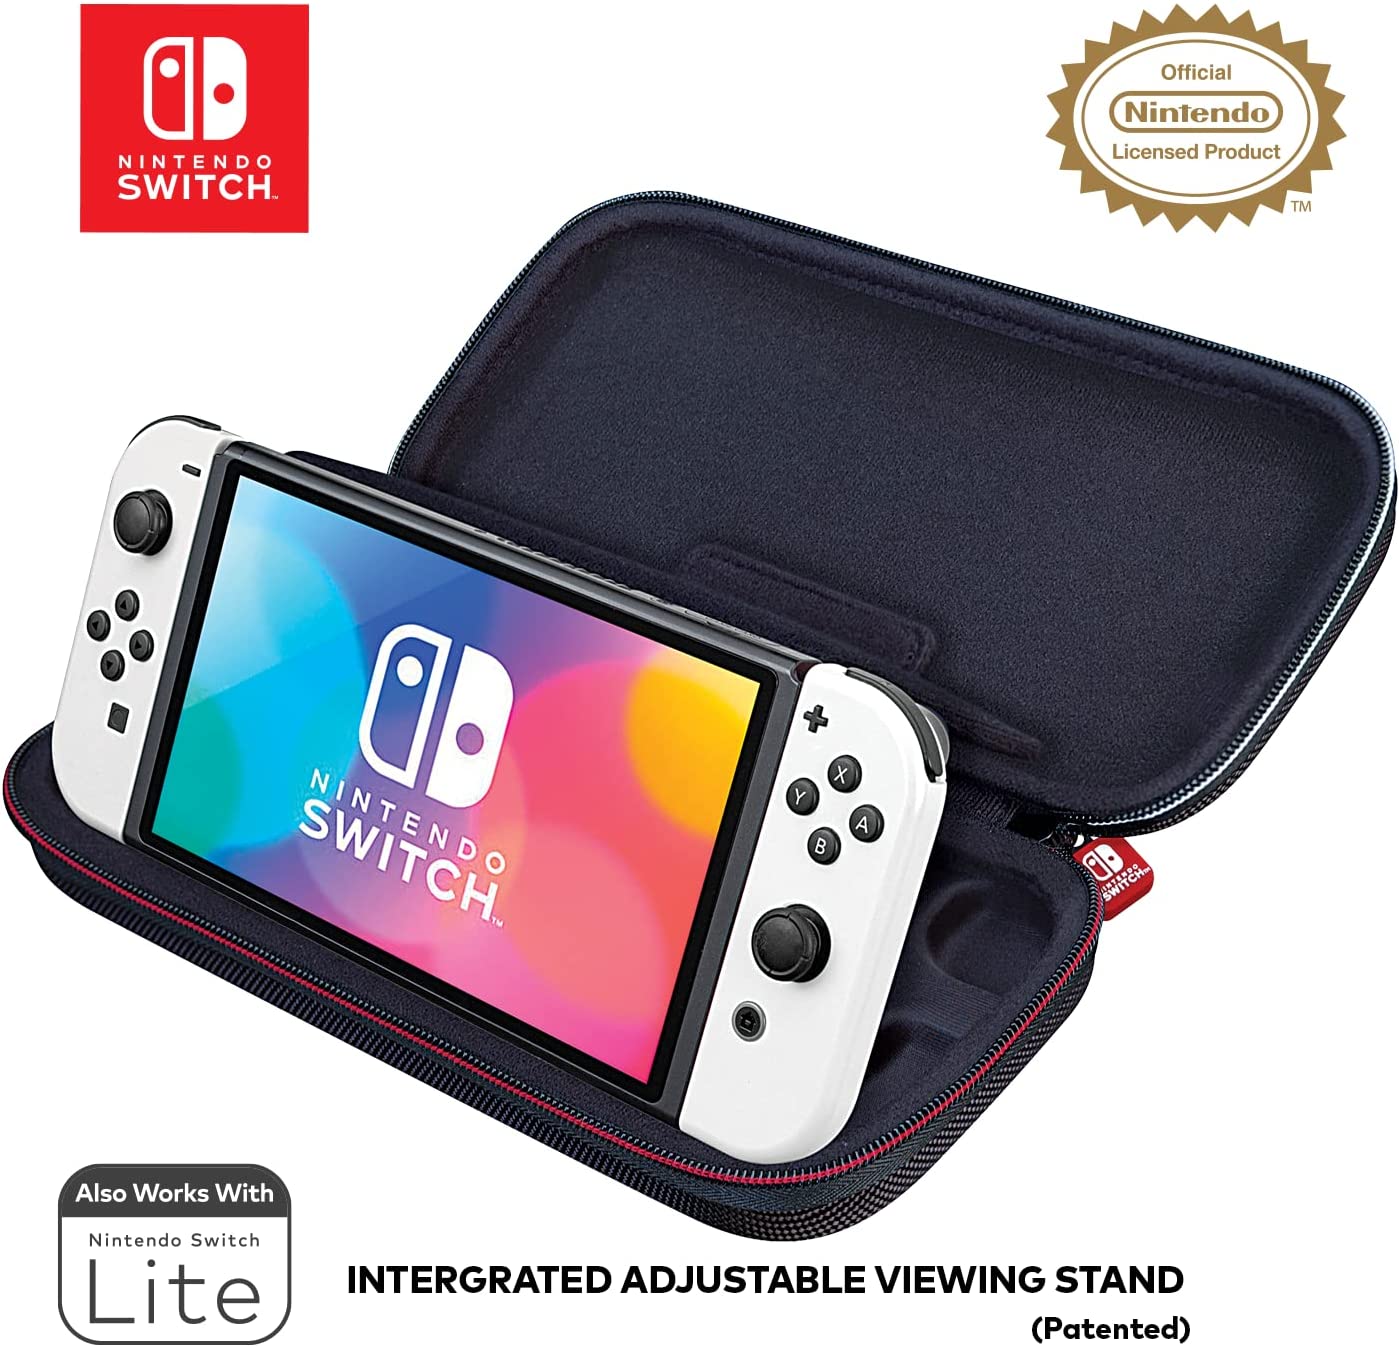 Скриншоты Дорожный чехол Deluxe Travel Case для Nintendo Switch/OLED/Lite [NNS40] интернет-магазин Омегагейм